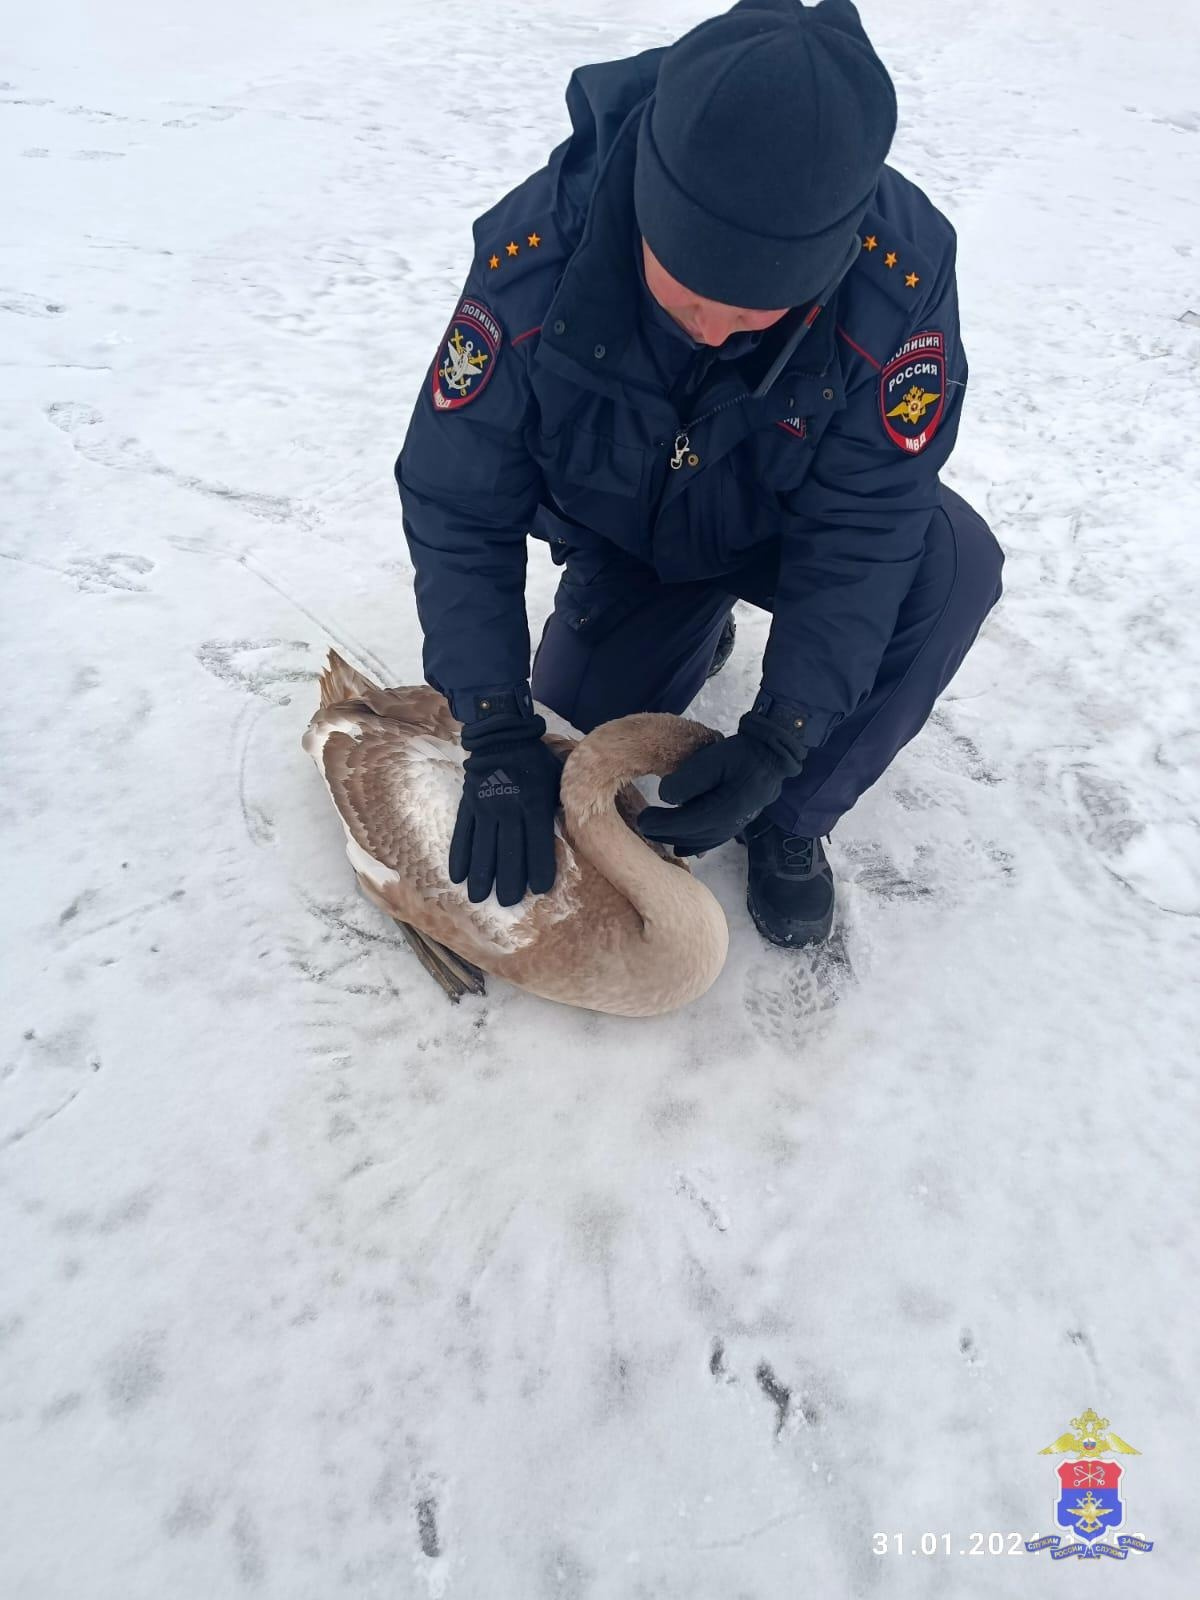 Транспортные полицейские спасли замерзающего лебедя в Петербурге